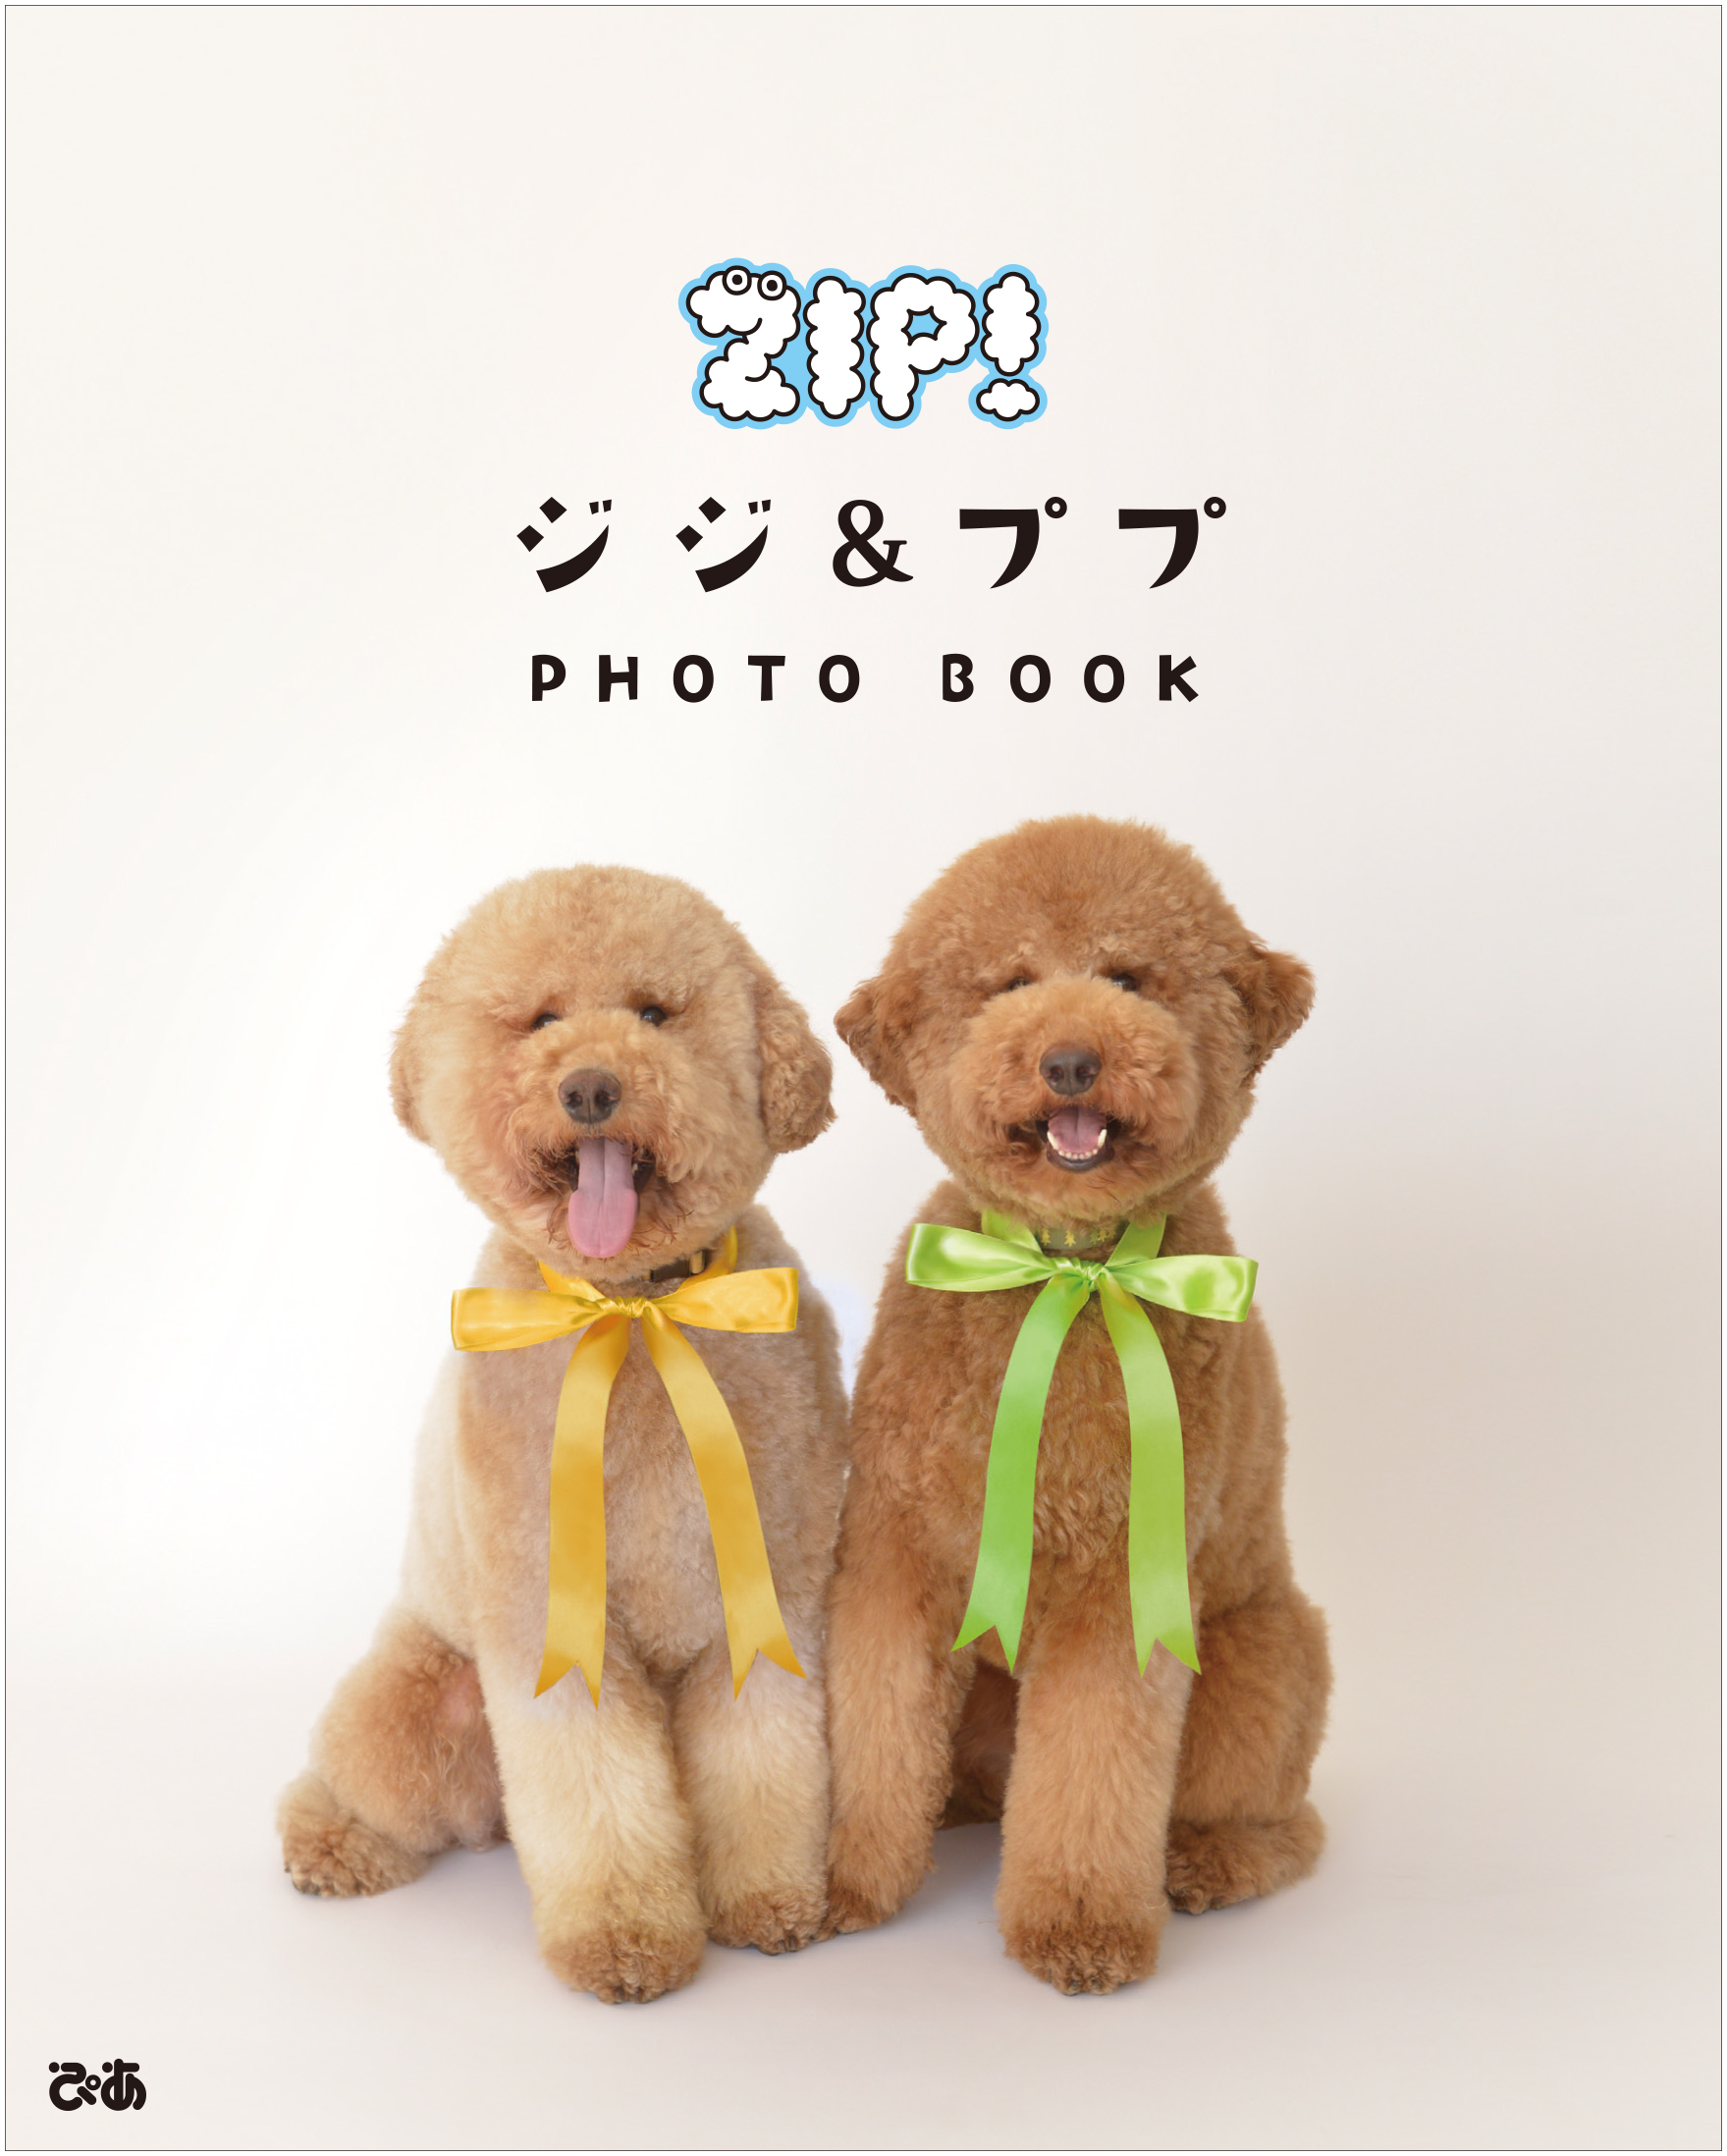 Zip 出演の人気犬 ジジ ププの初フォトブックが発売 ぴあ株式会社のプレスリリース